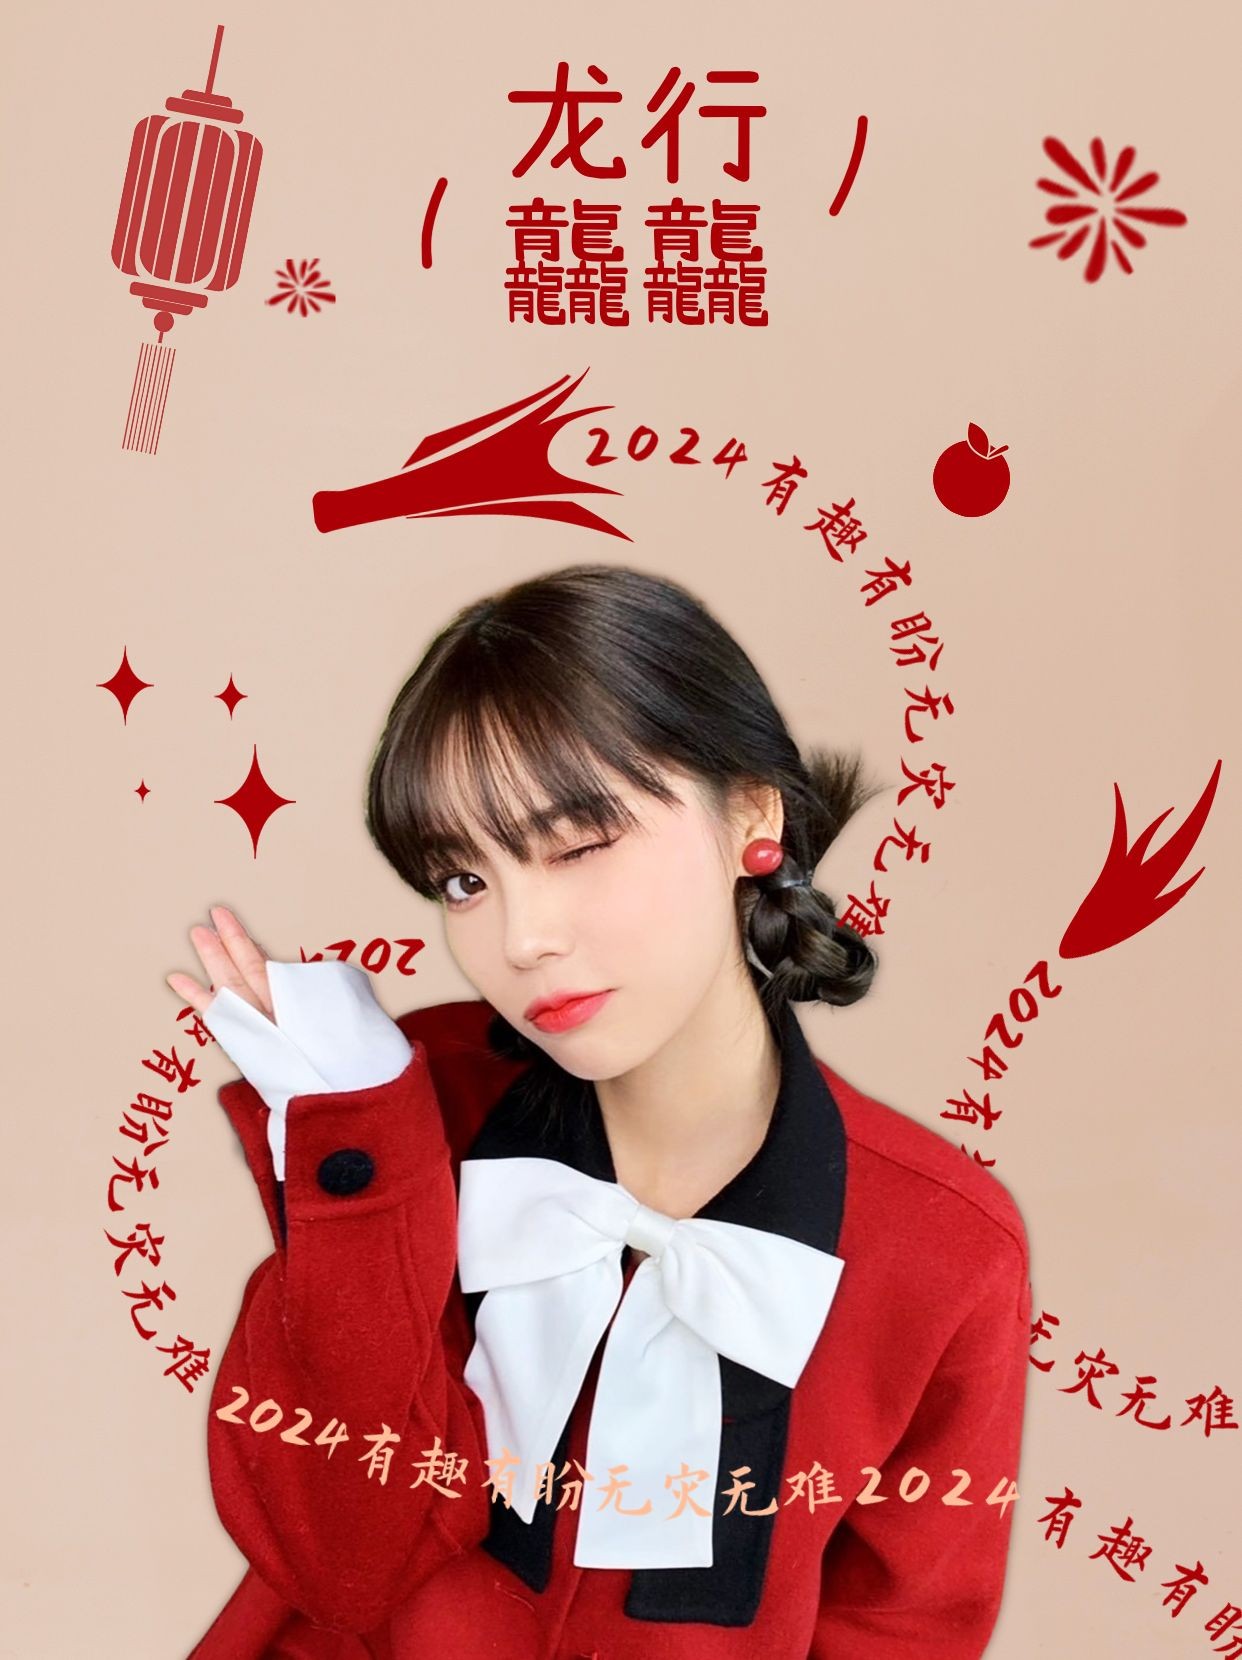 春节新年晒照小红书封面